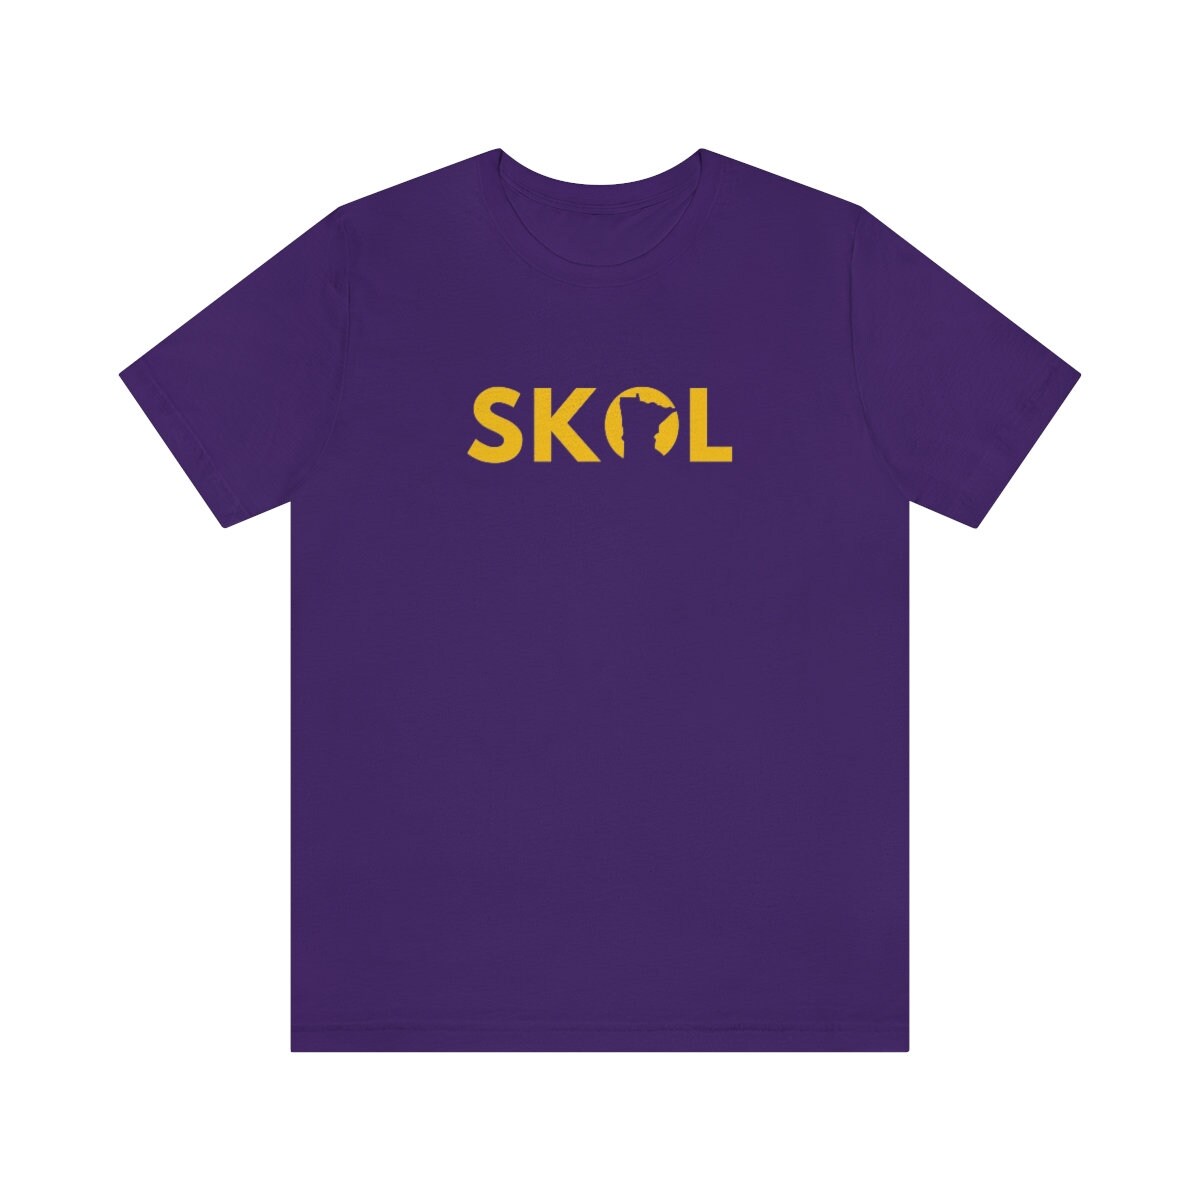 Buy Minnesota Vikings SKOL T-shirt SKOL Vikings Shirt MN Online in